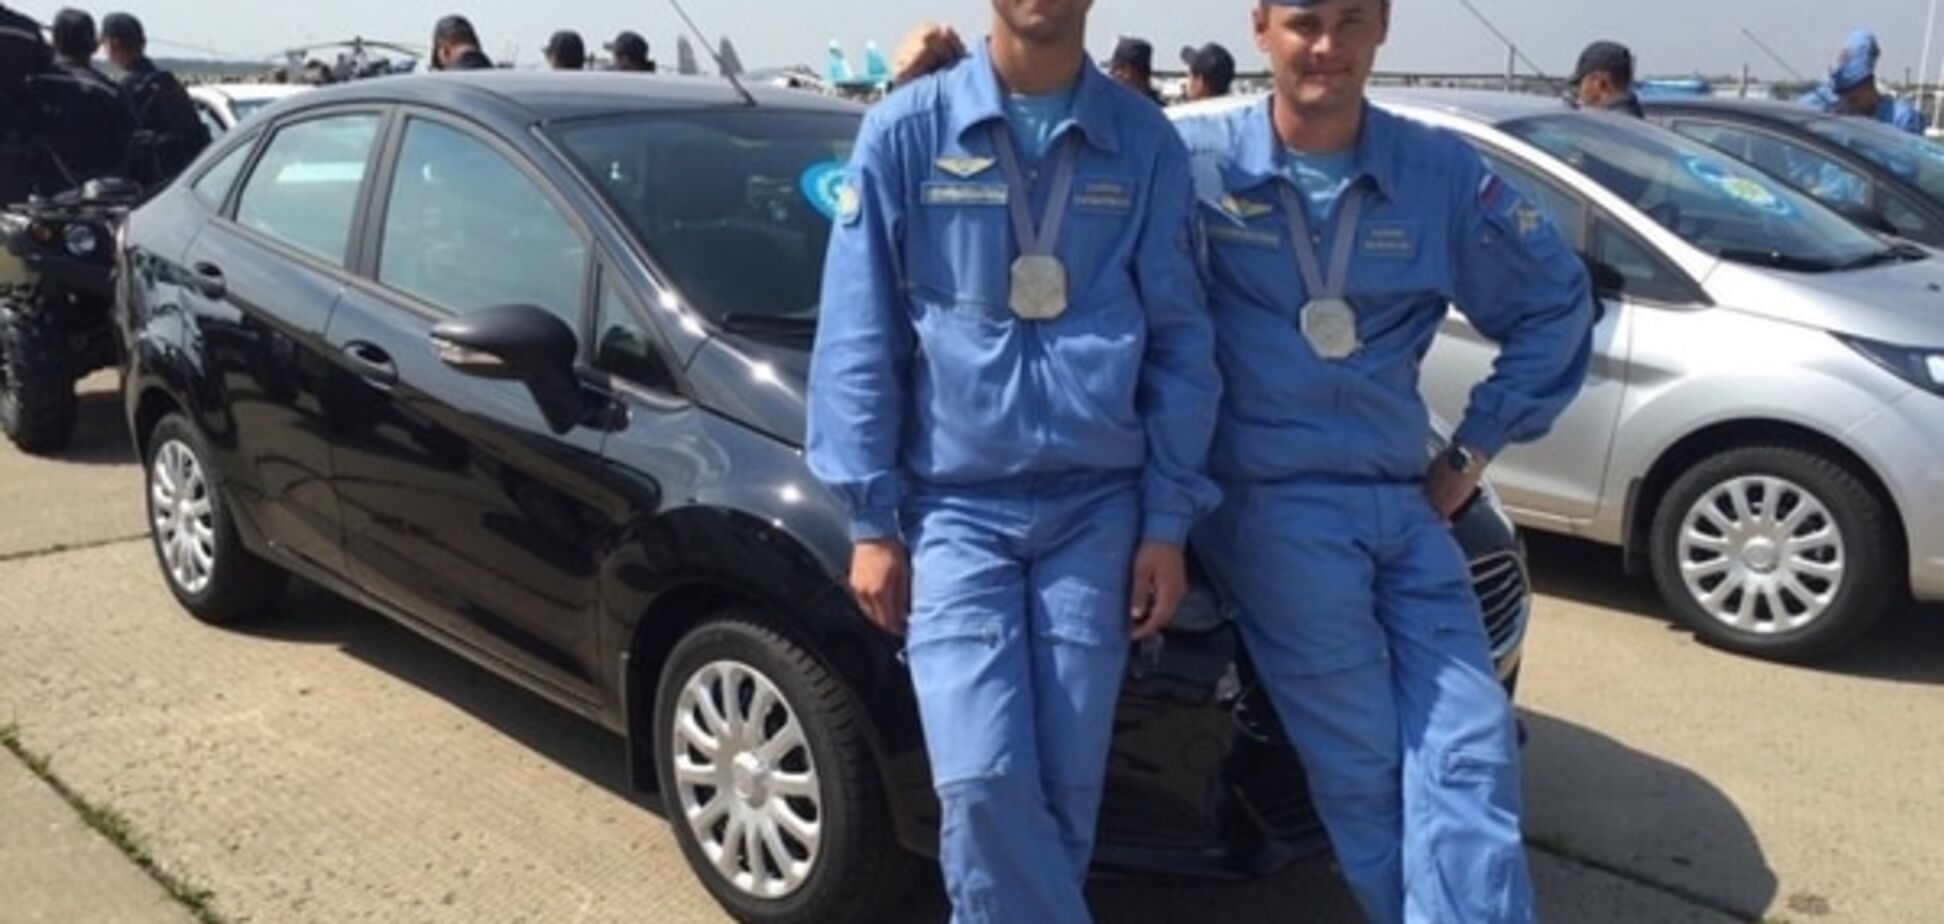 Волонтеры 'вычислили' экипаж российского Су-24, бомбящего сирийские города